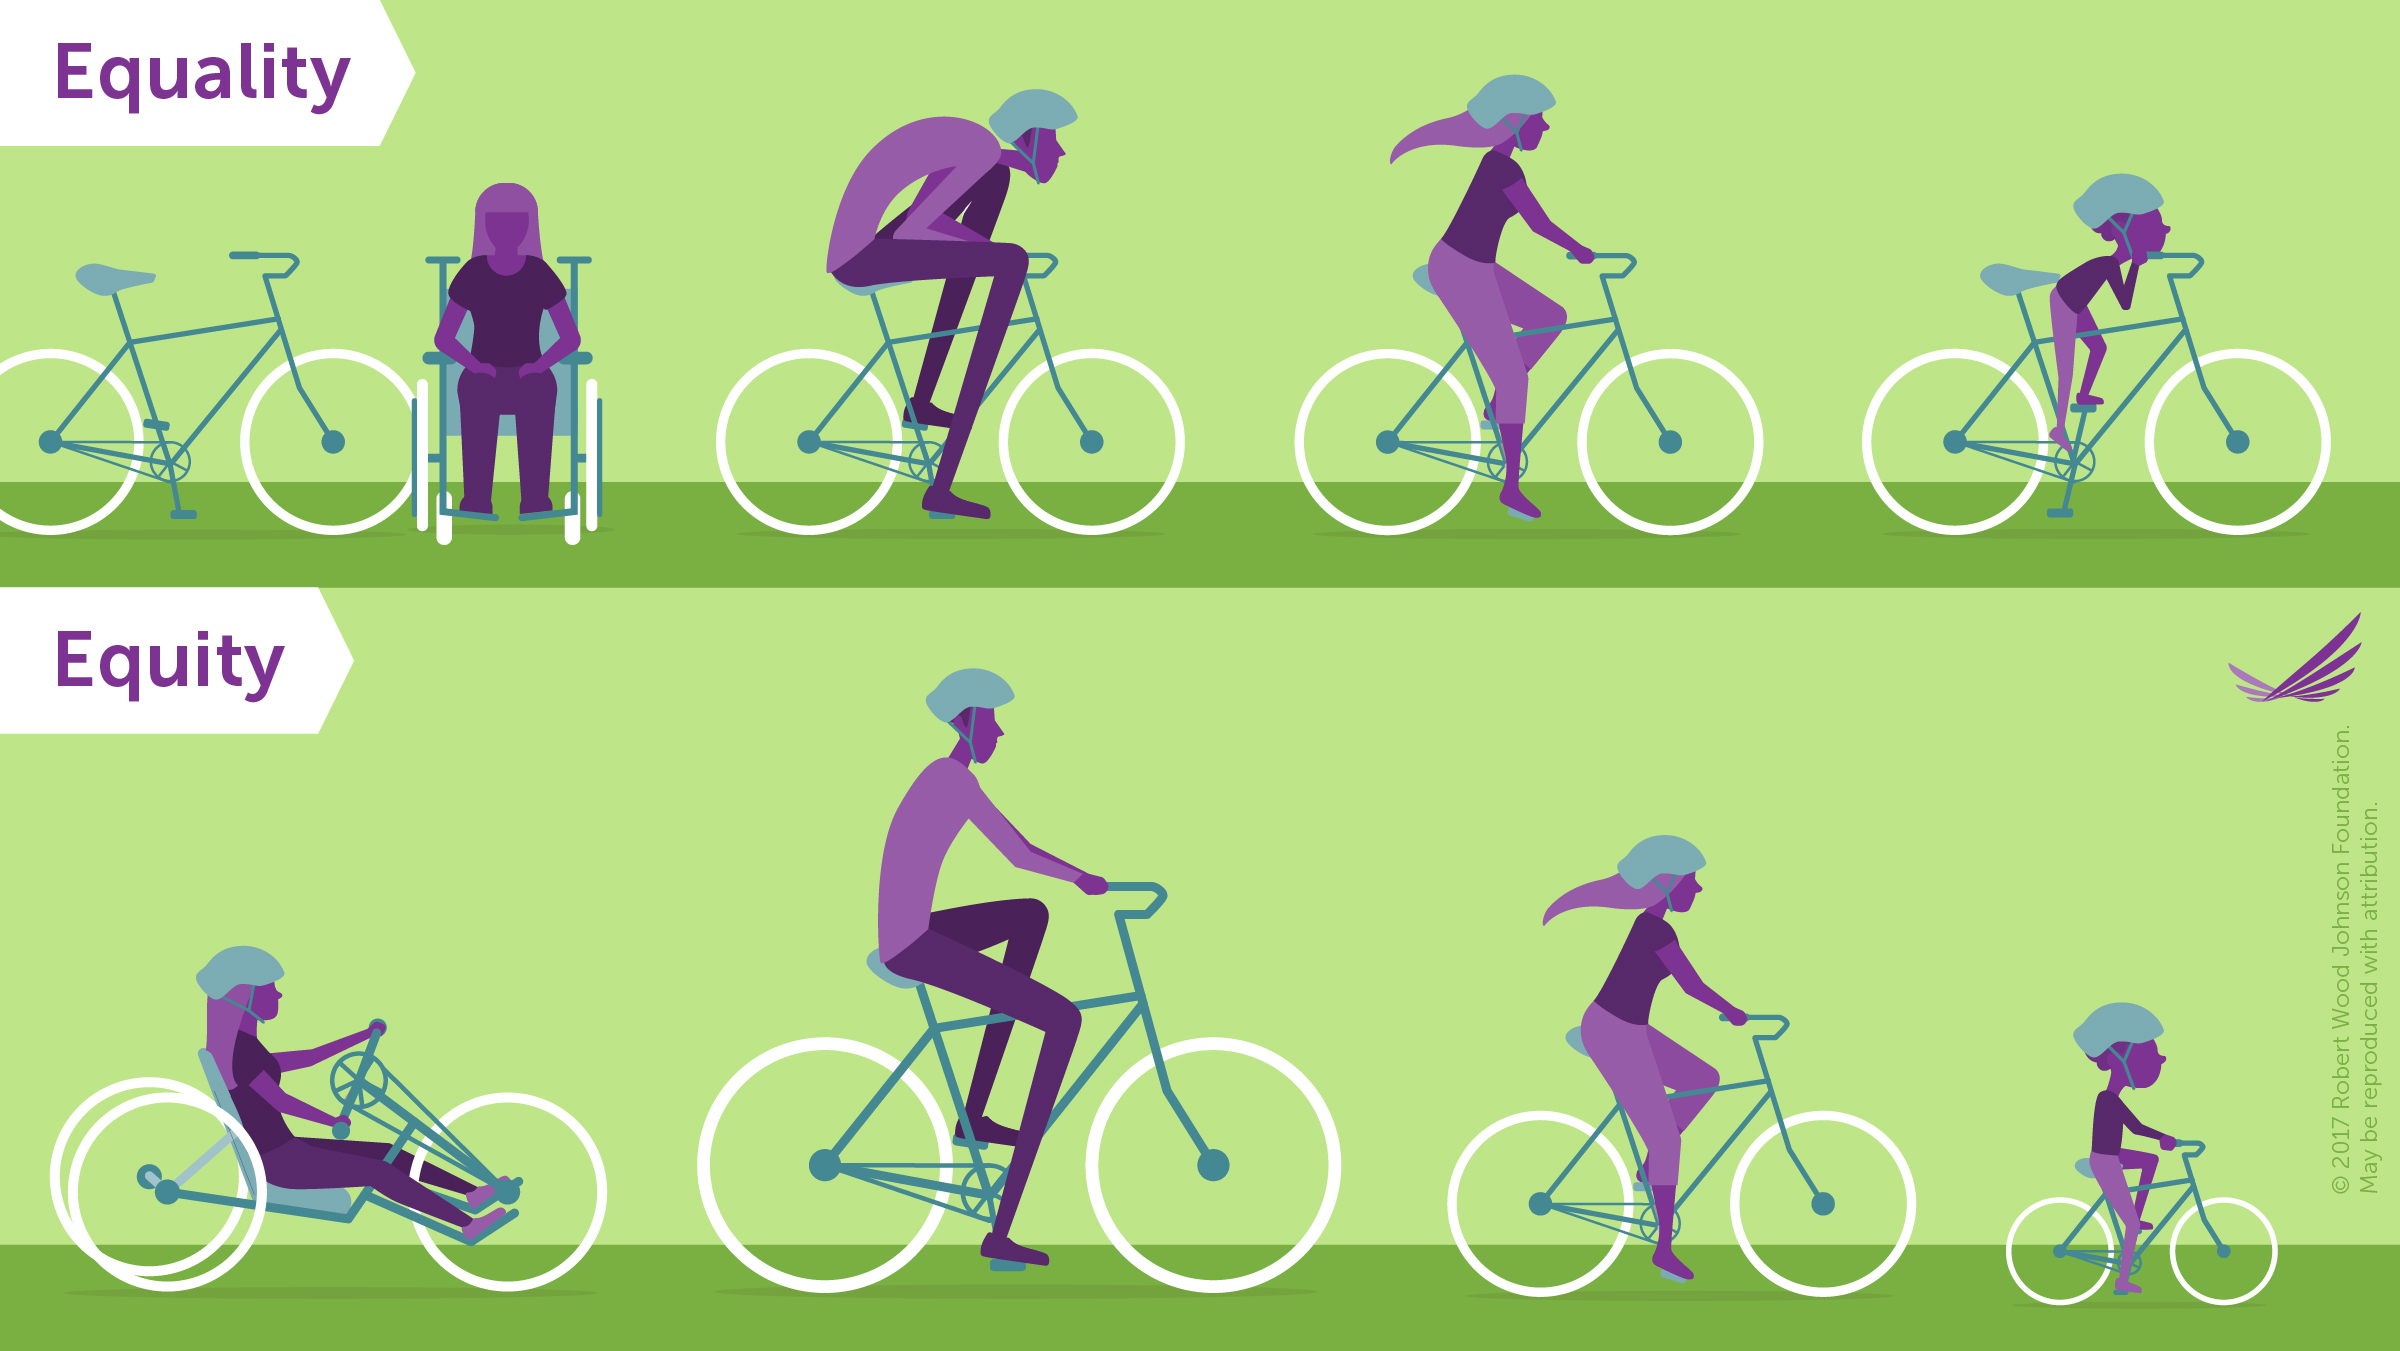 平等と平等の違いを示す自転車の写真